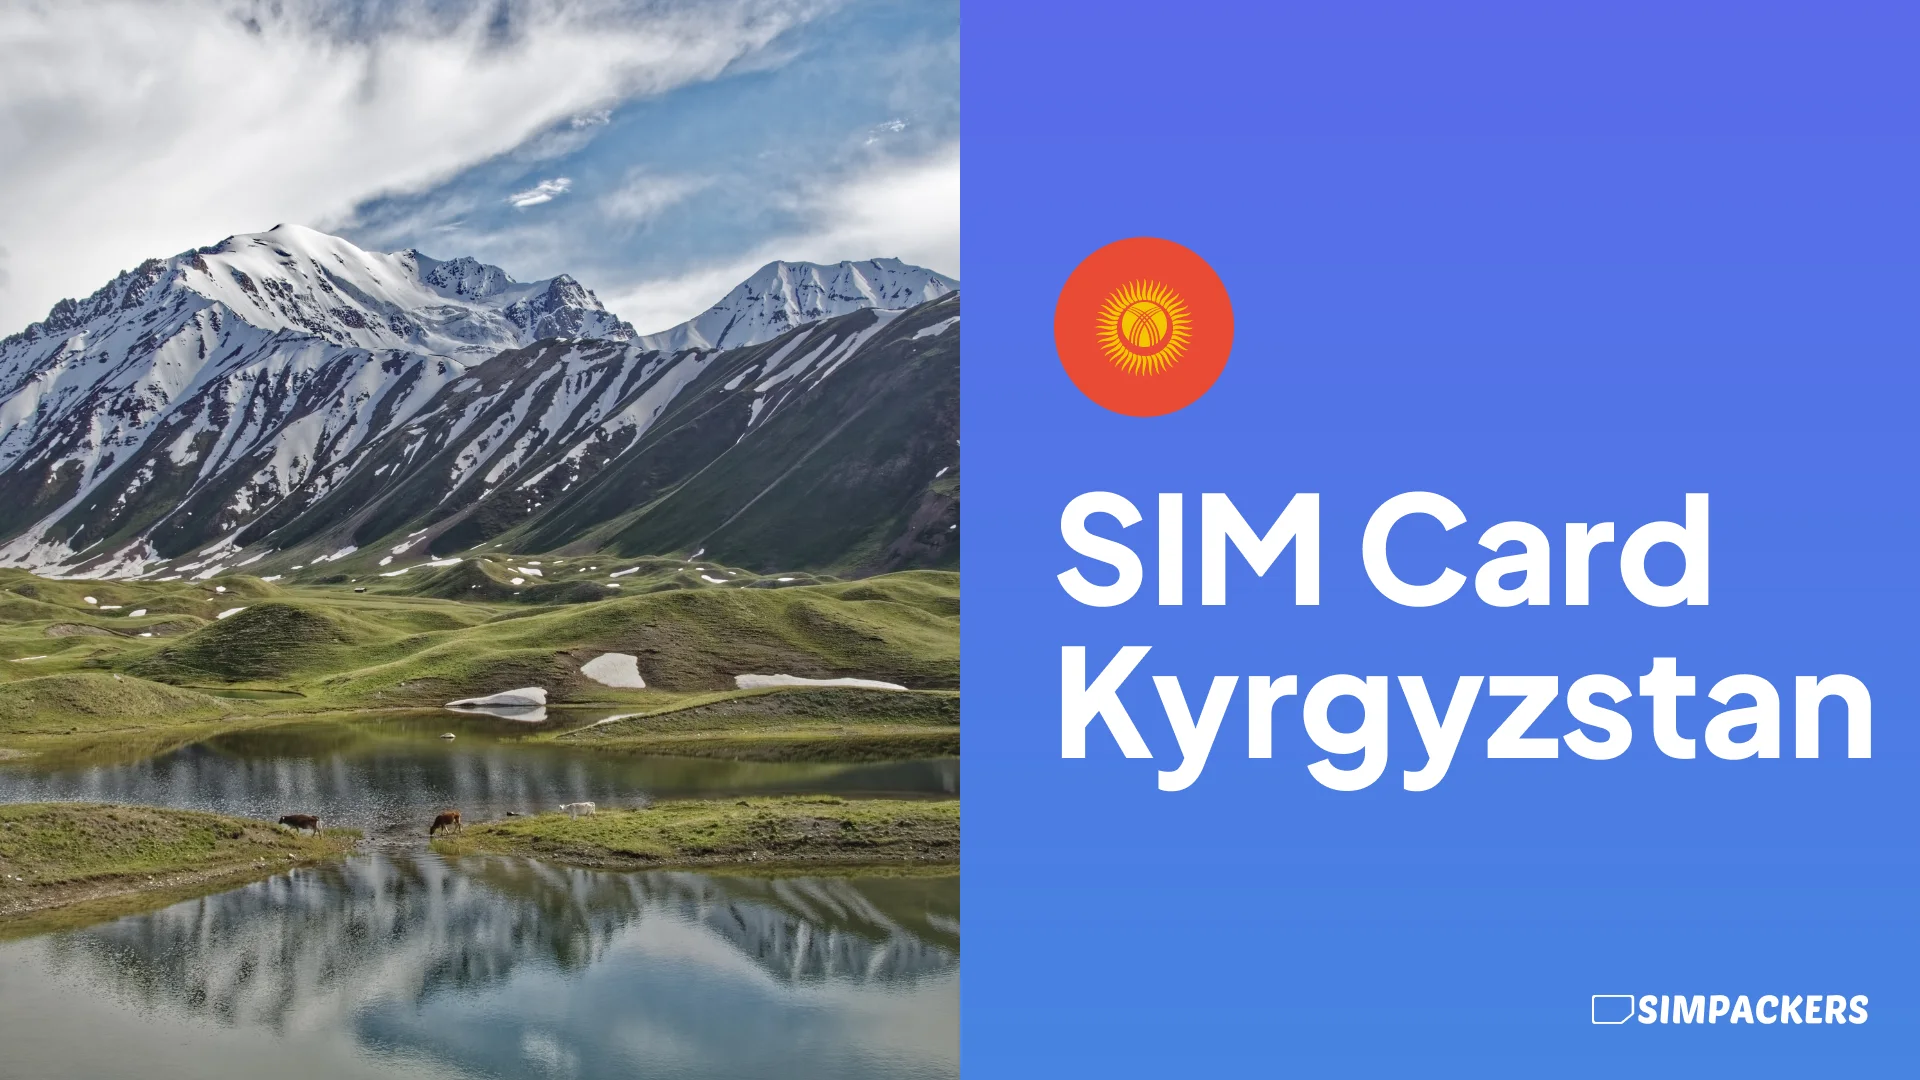 EN/FEATURED_IMAGES/sim-card-kyrgyzstan.webp